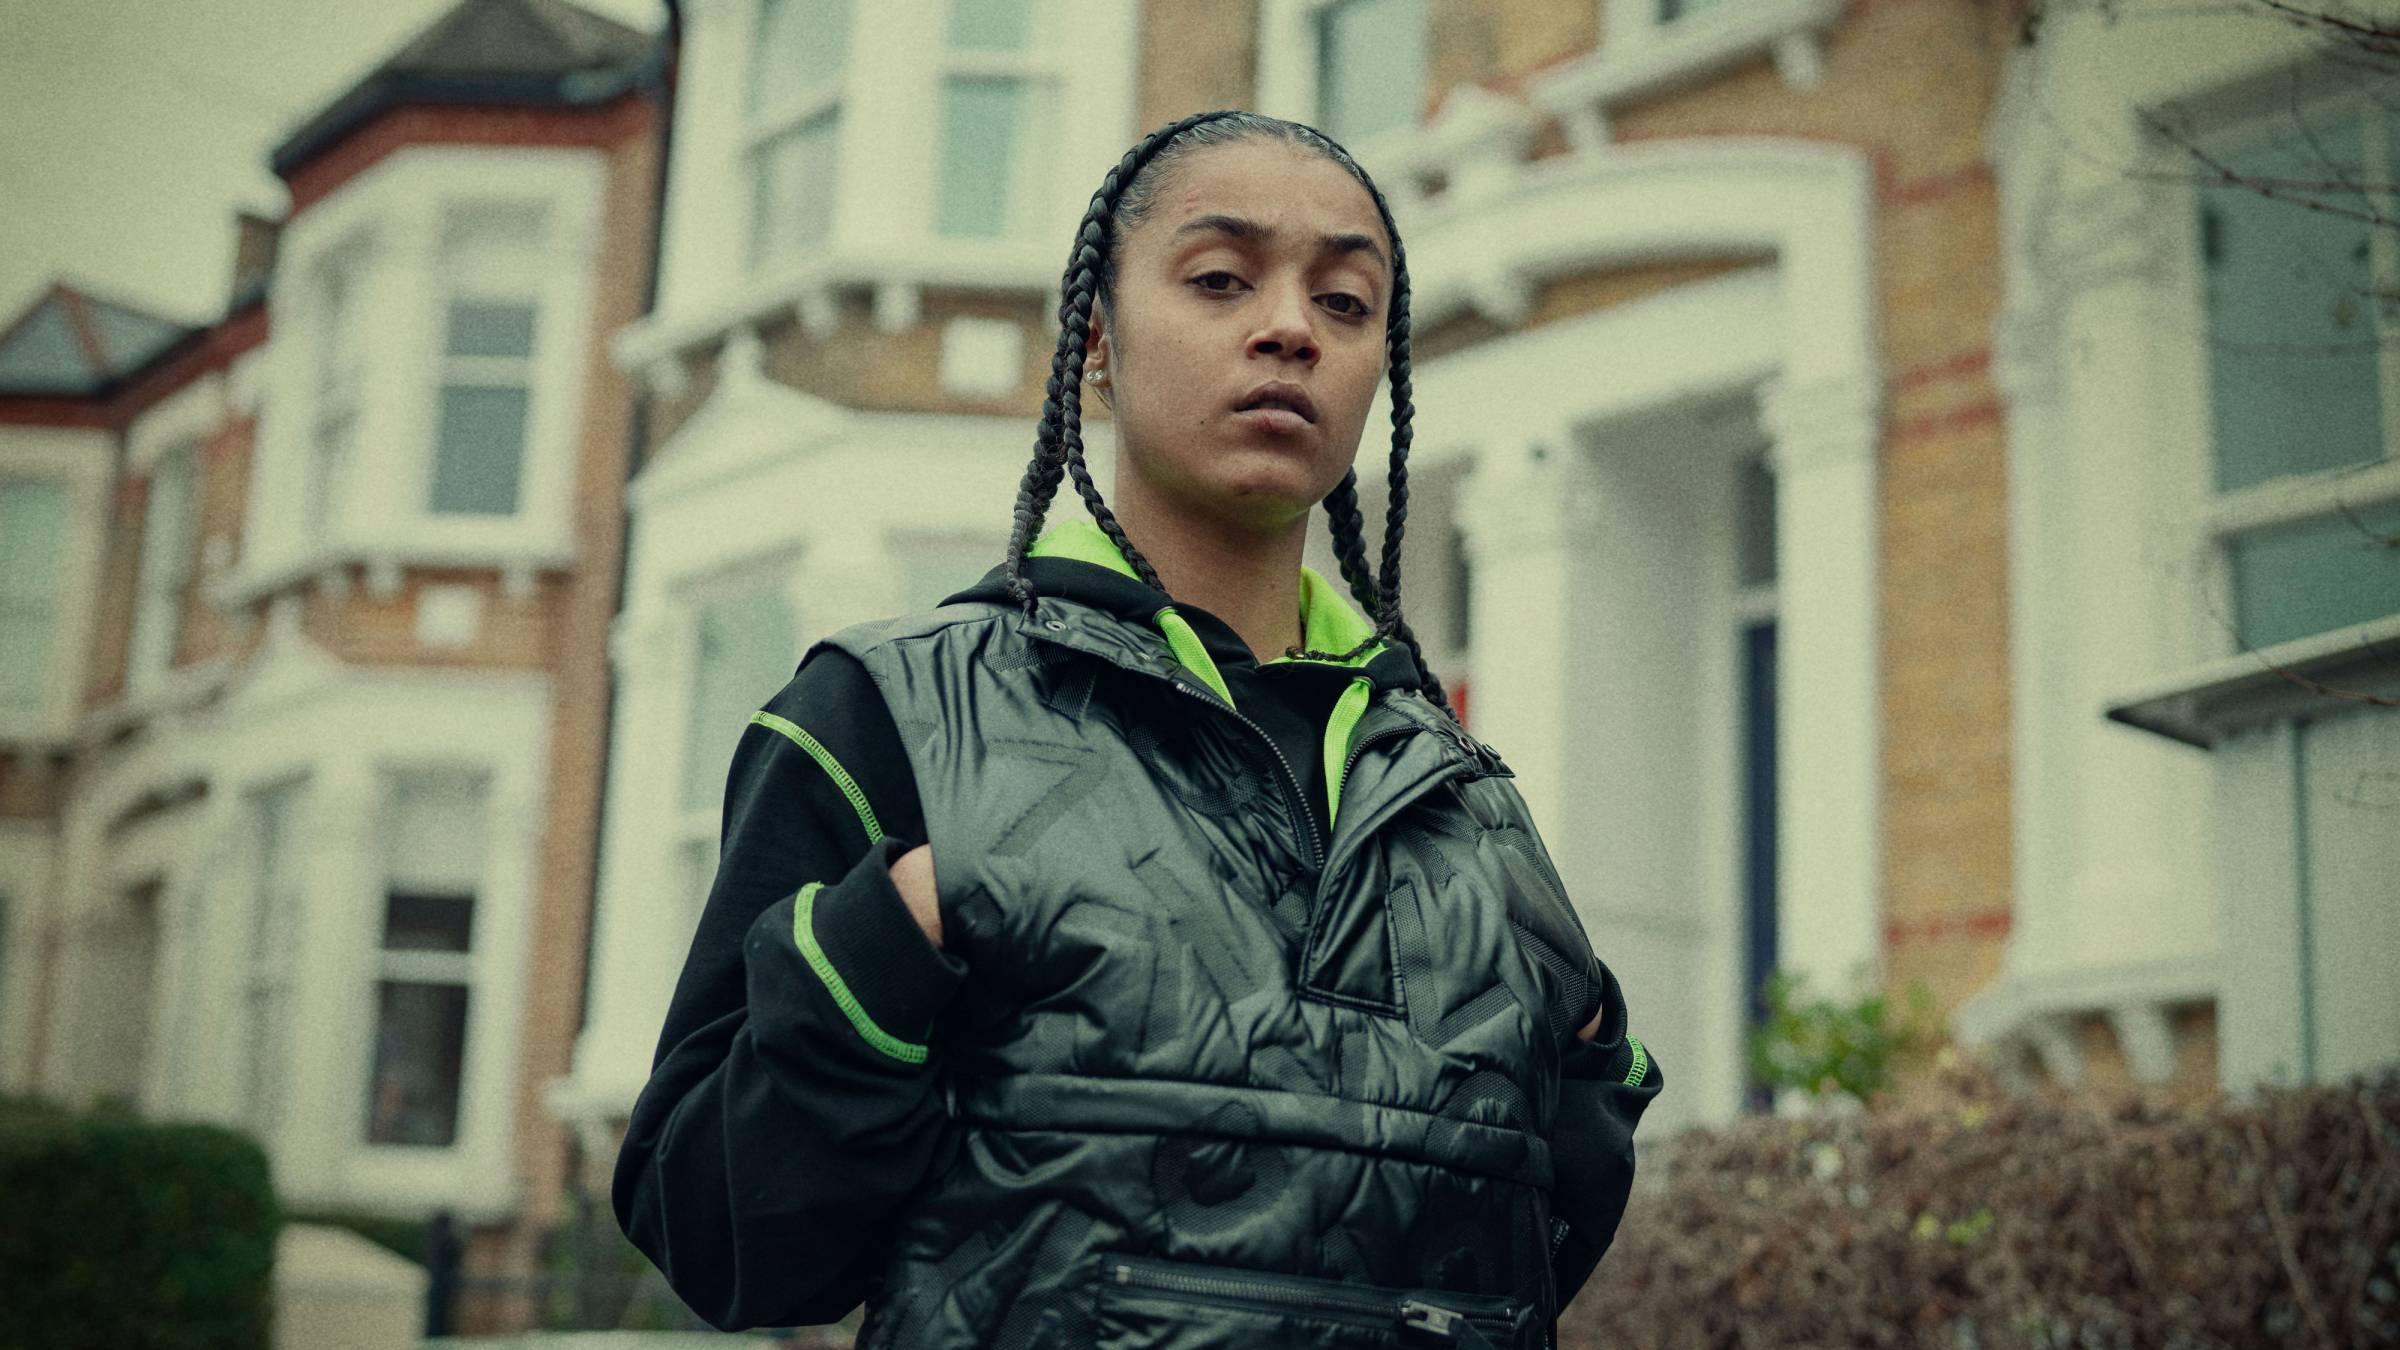 immagine di copertina per articolo Alla periferia di Londra. Cosa significa black British?